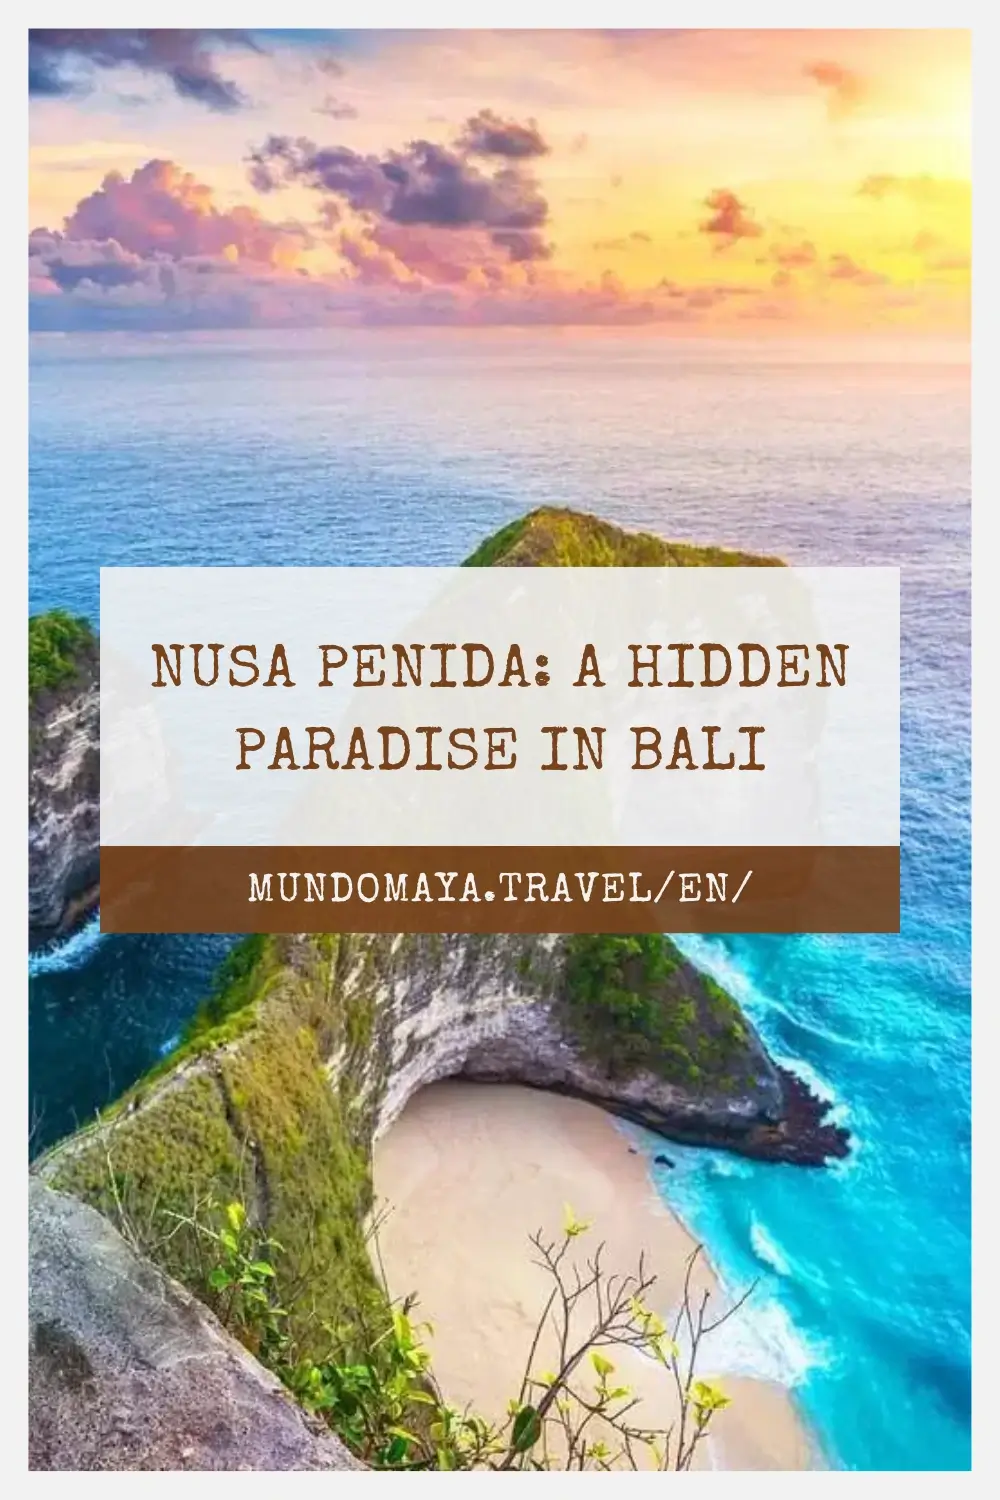 Nusa Penida: A Hidden Paradise in Bali